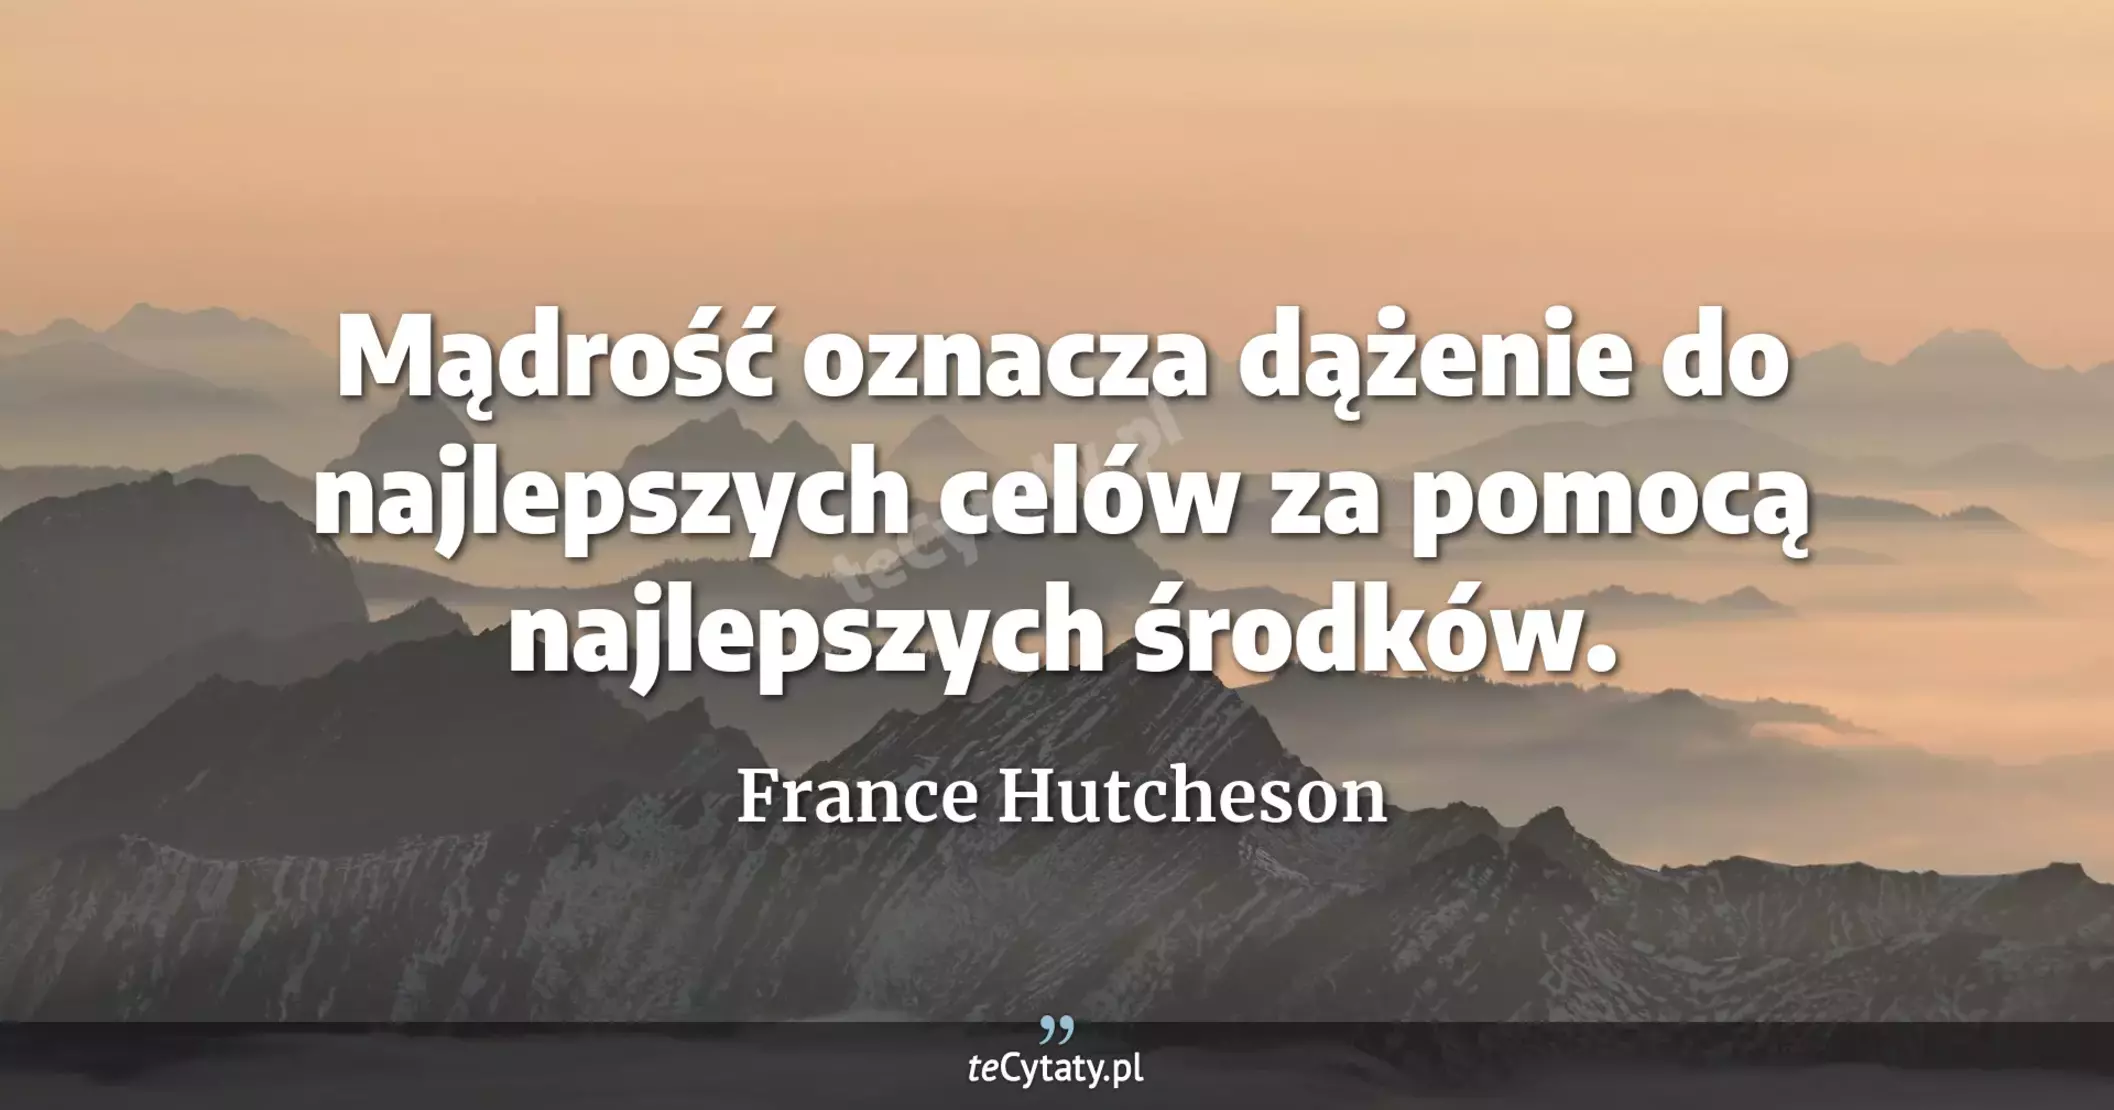 Mądrość oznacza dążenie do najlepszych celów za pomocą najlepszych środków. - France Hutcheson